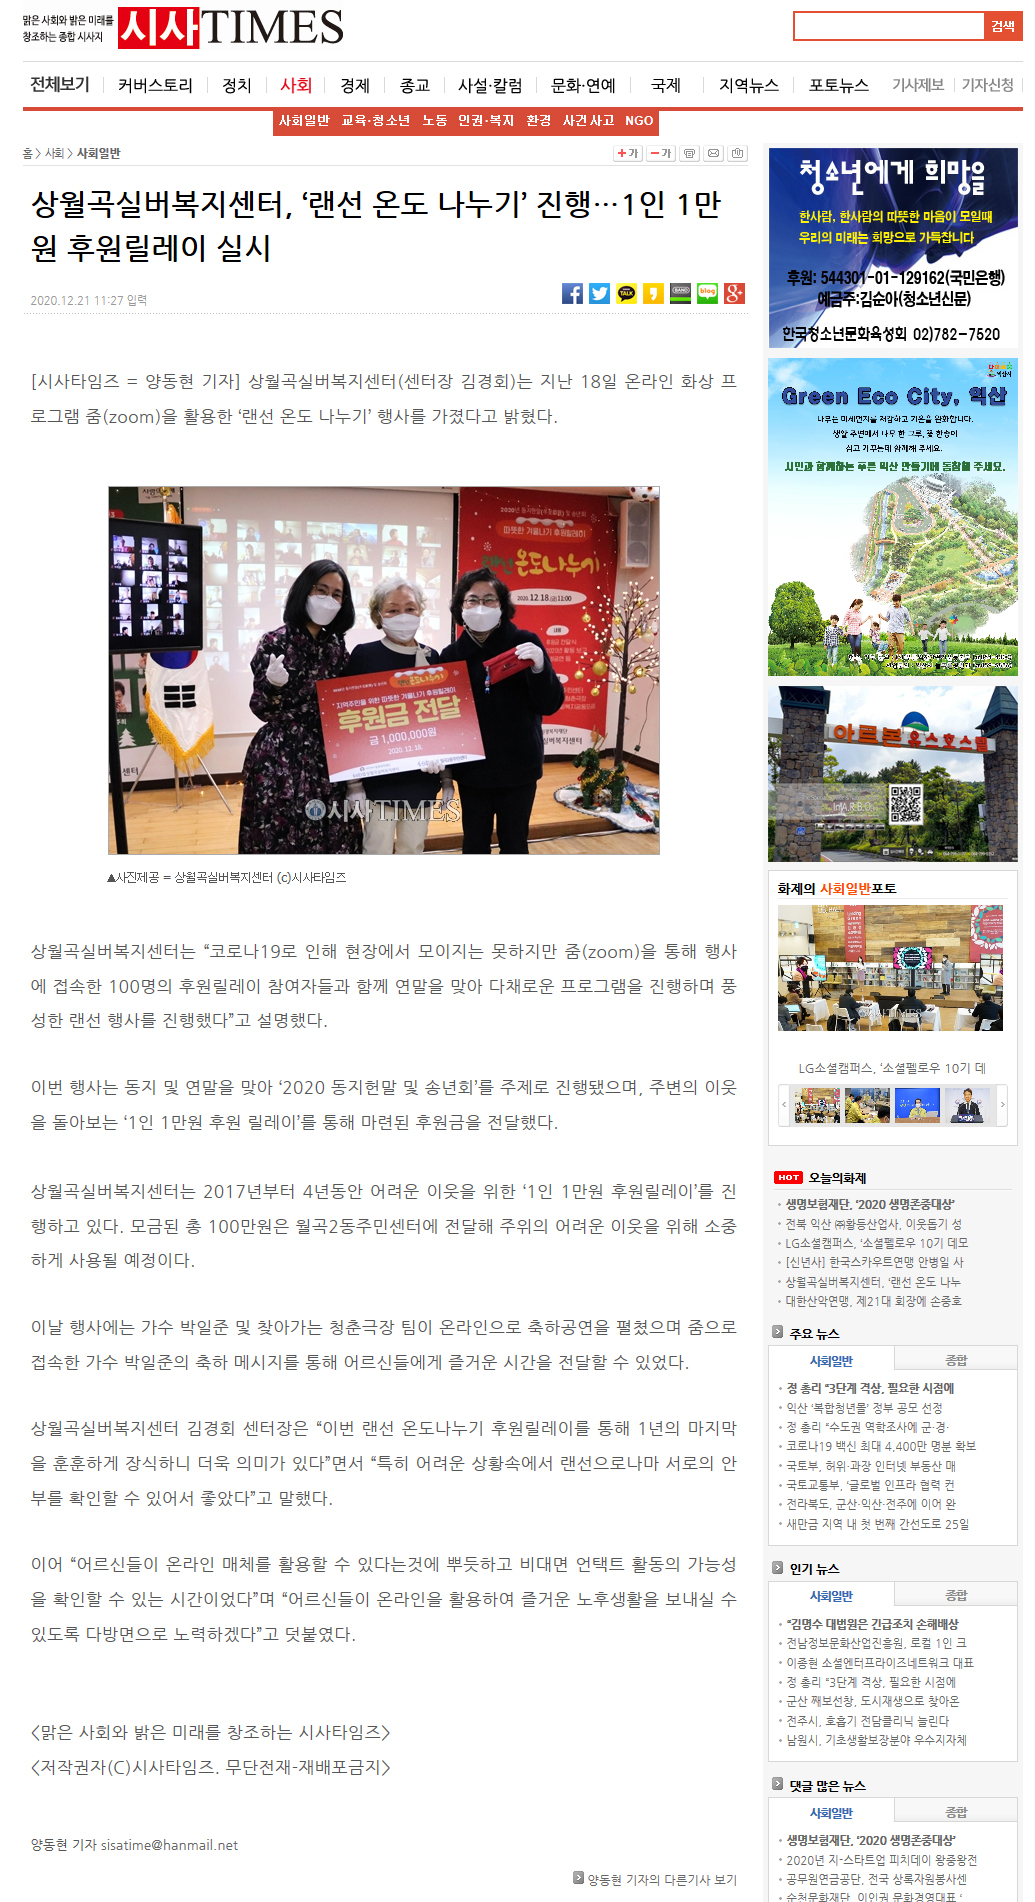 (201221)랜선온도나누기_시사타임즈.jpg